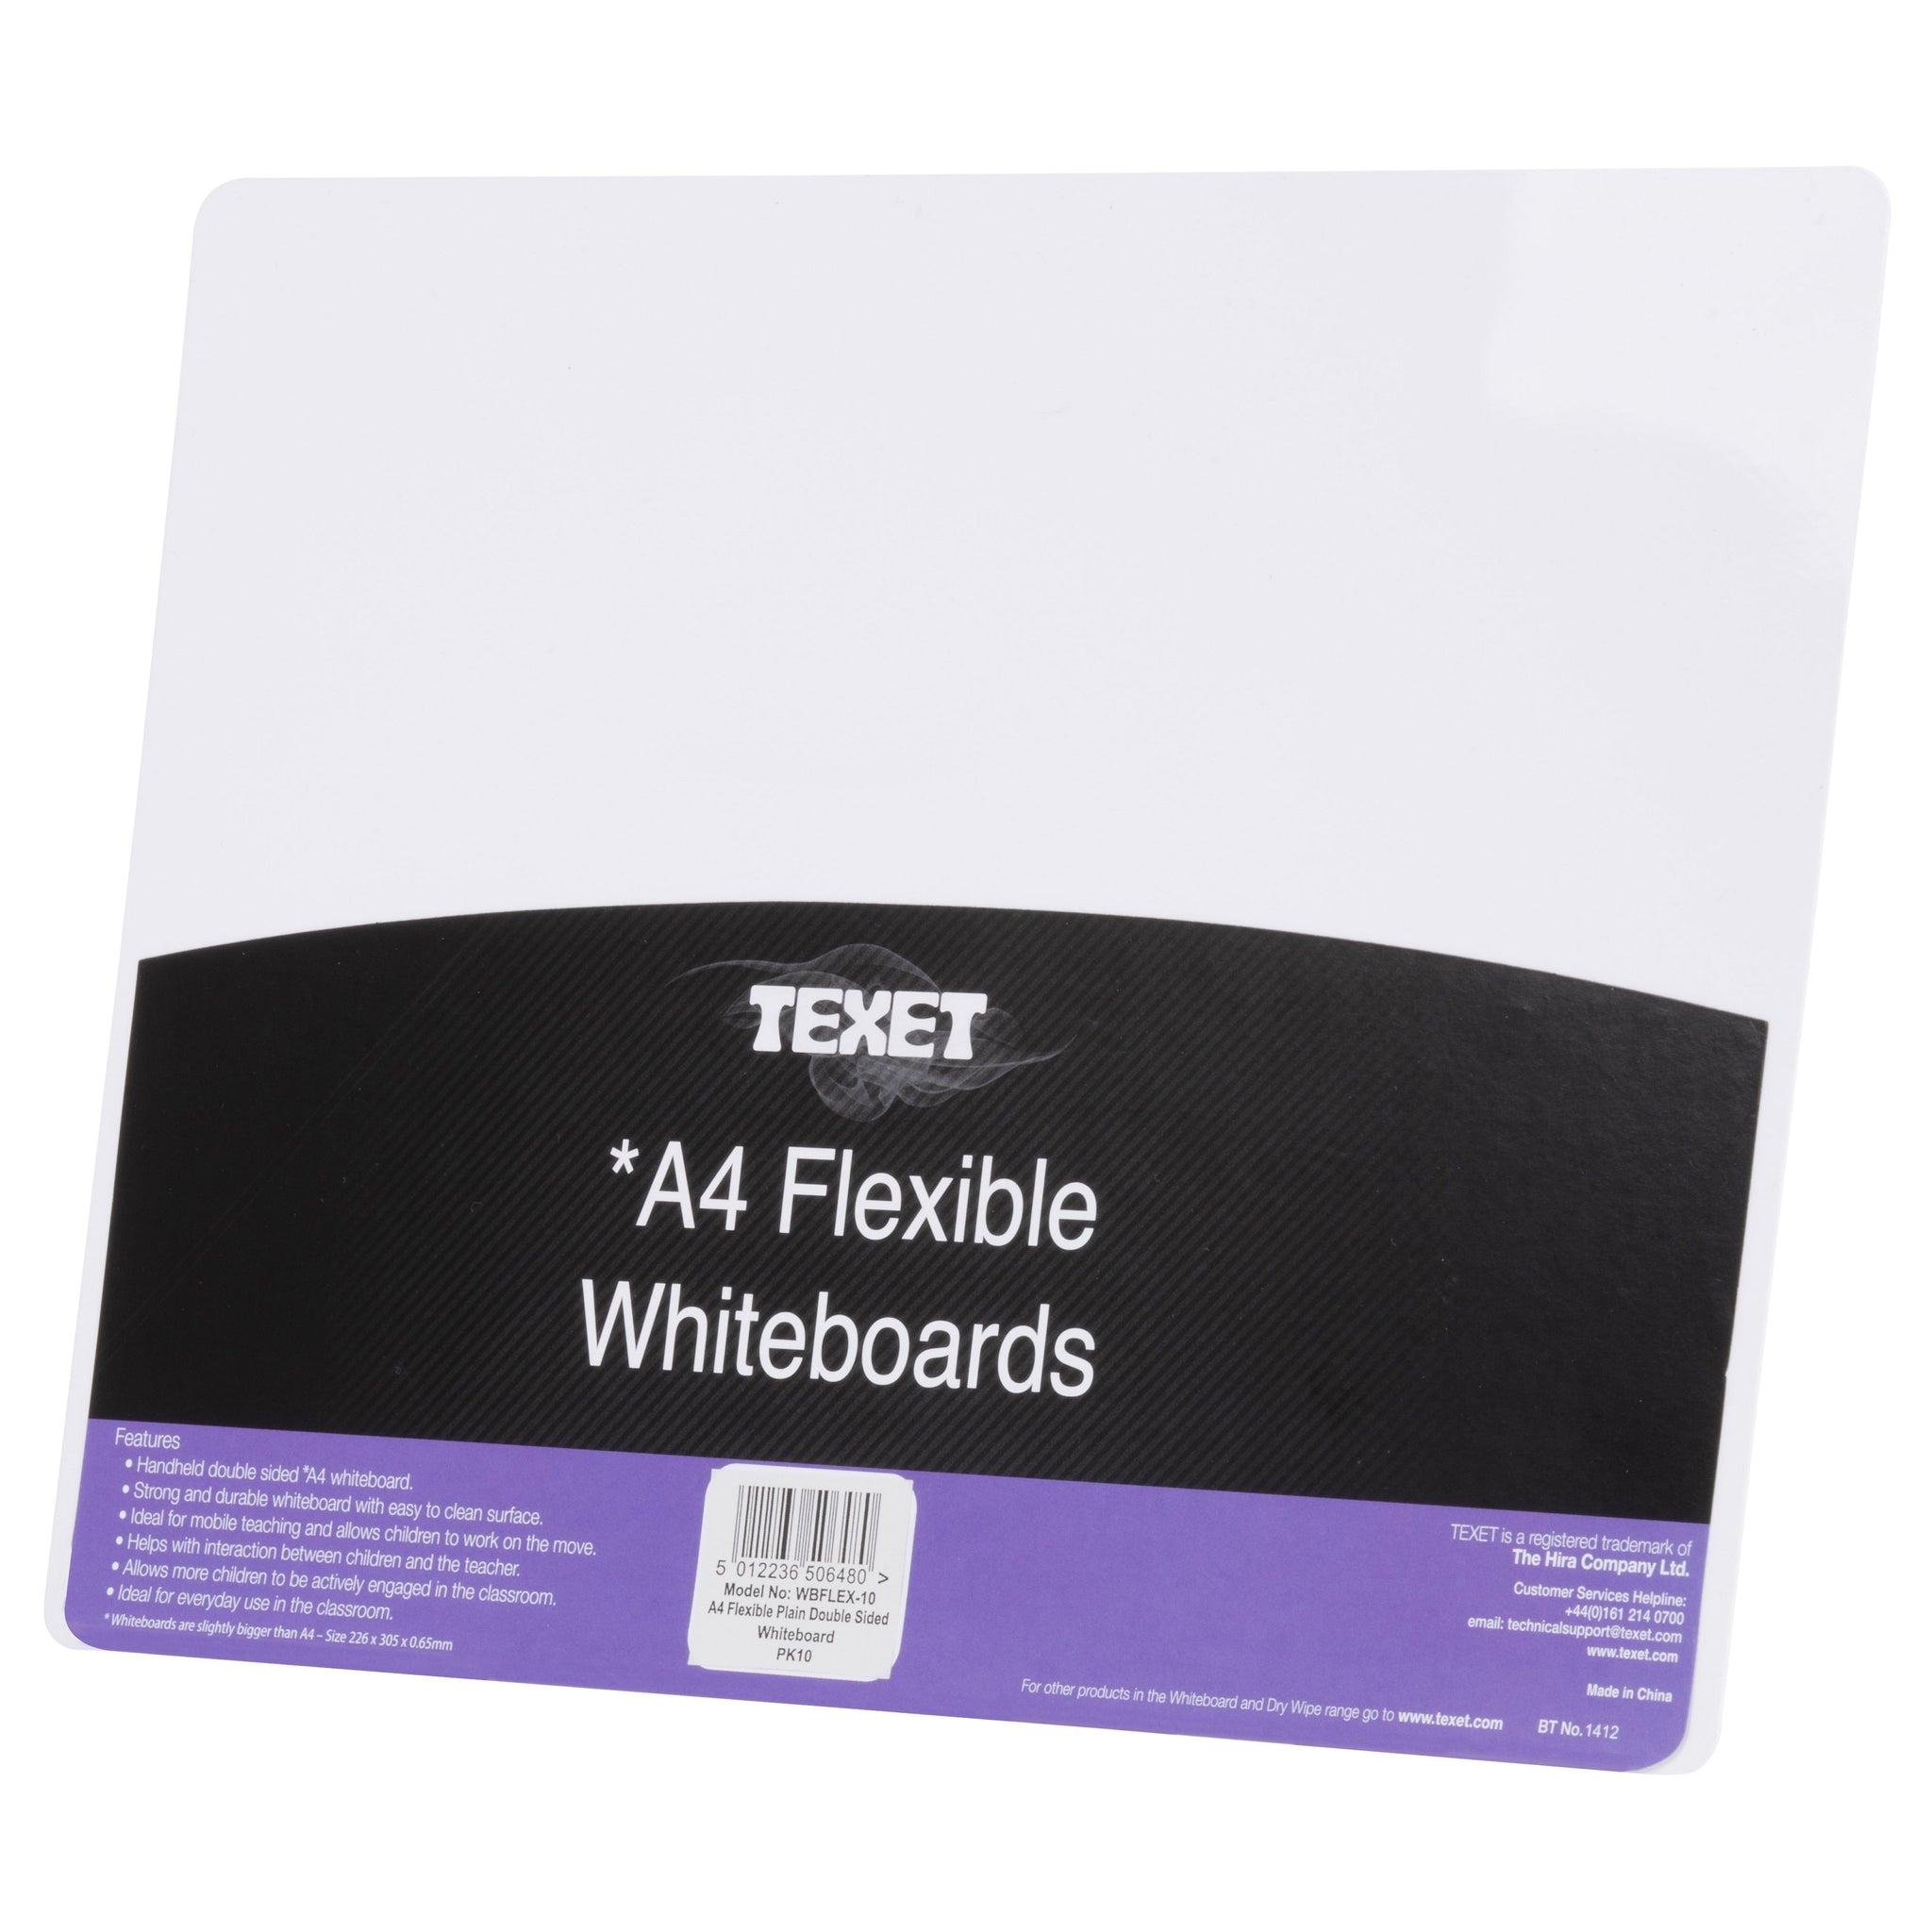 A4 Flexible Plain Whiteboard PK10